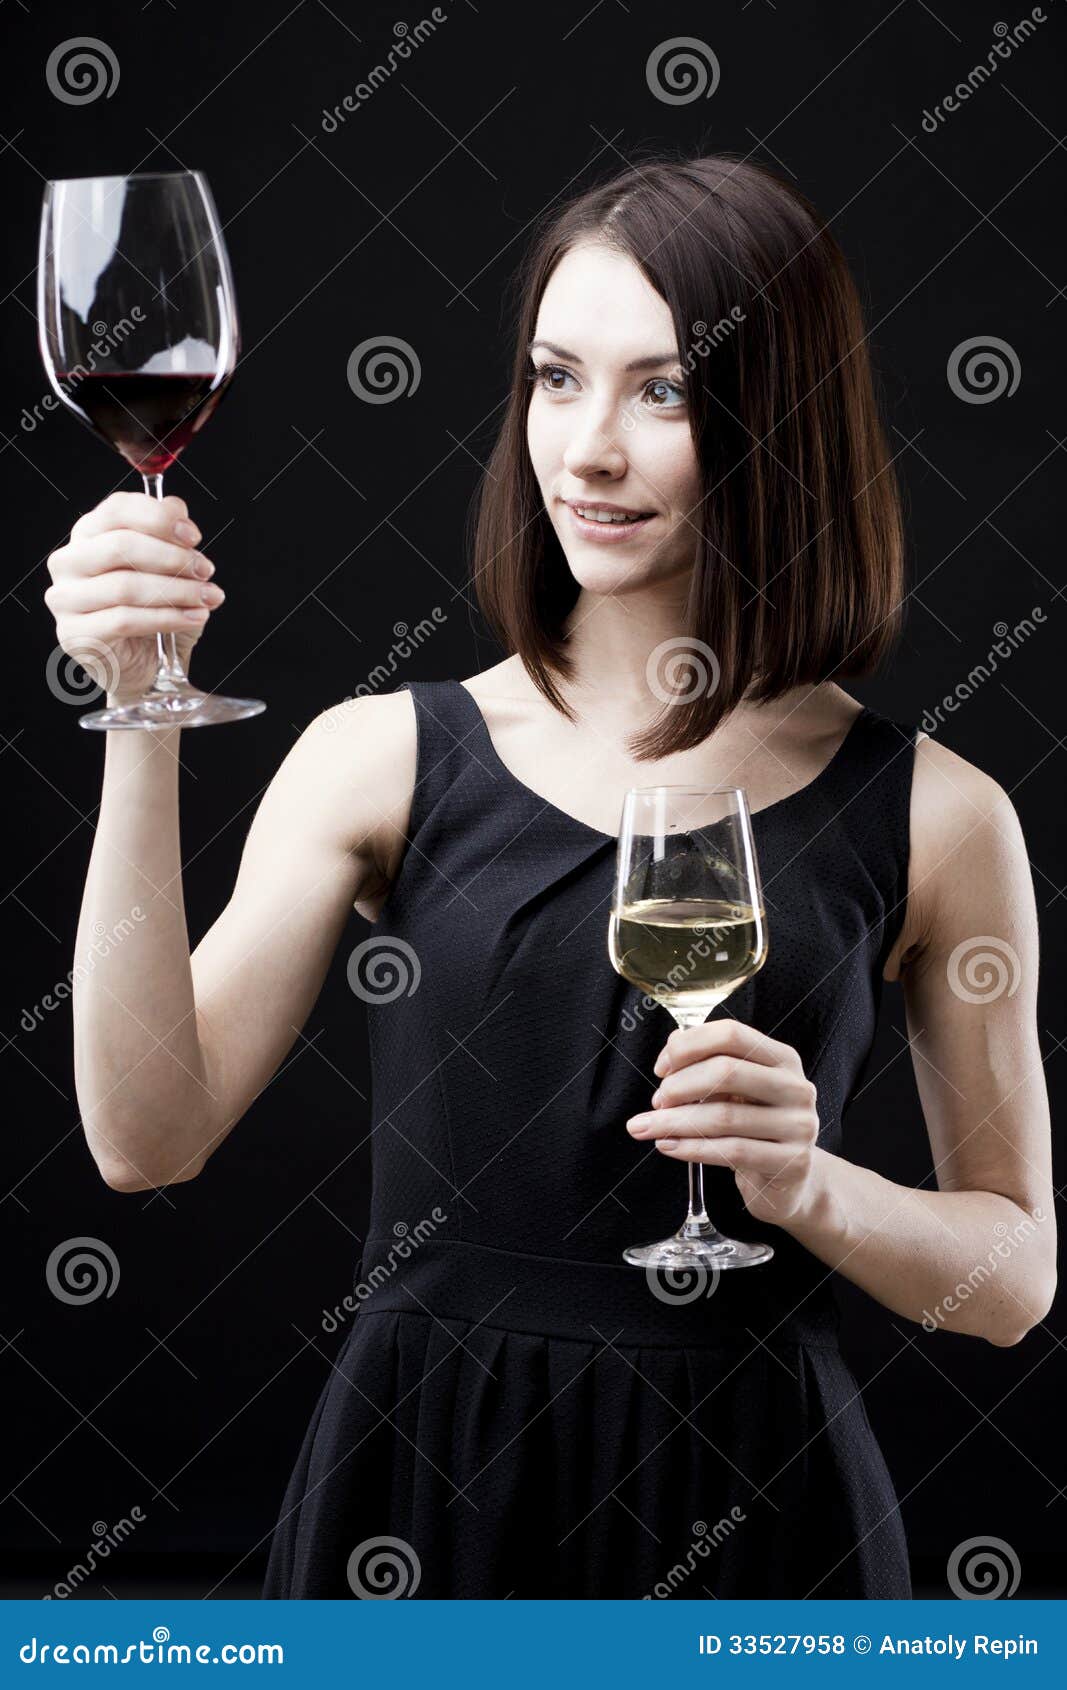 Вина перед мужем. Девушка держит бокал. Человек с бокалом вина референс. Рука держит бокал. Девушка держит бокал в руке.